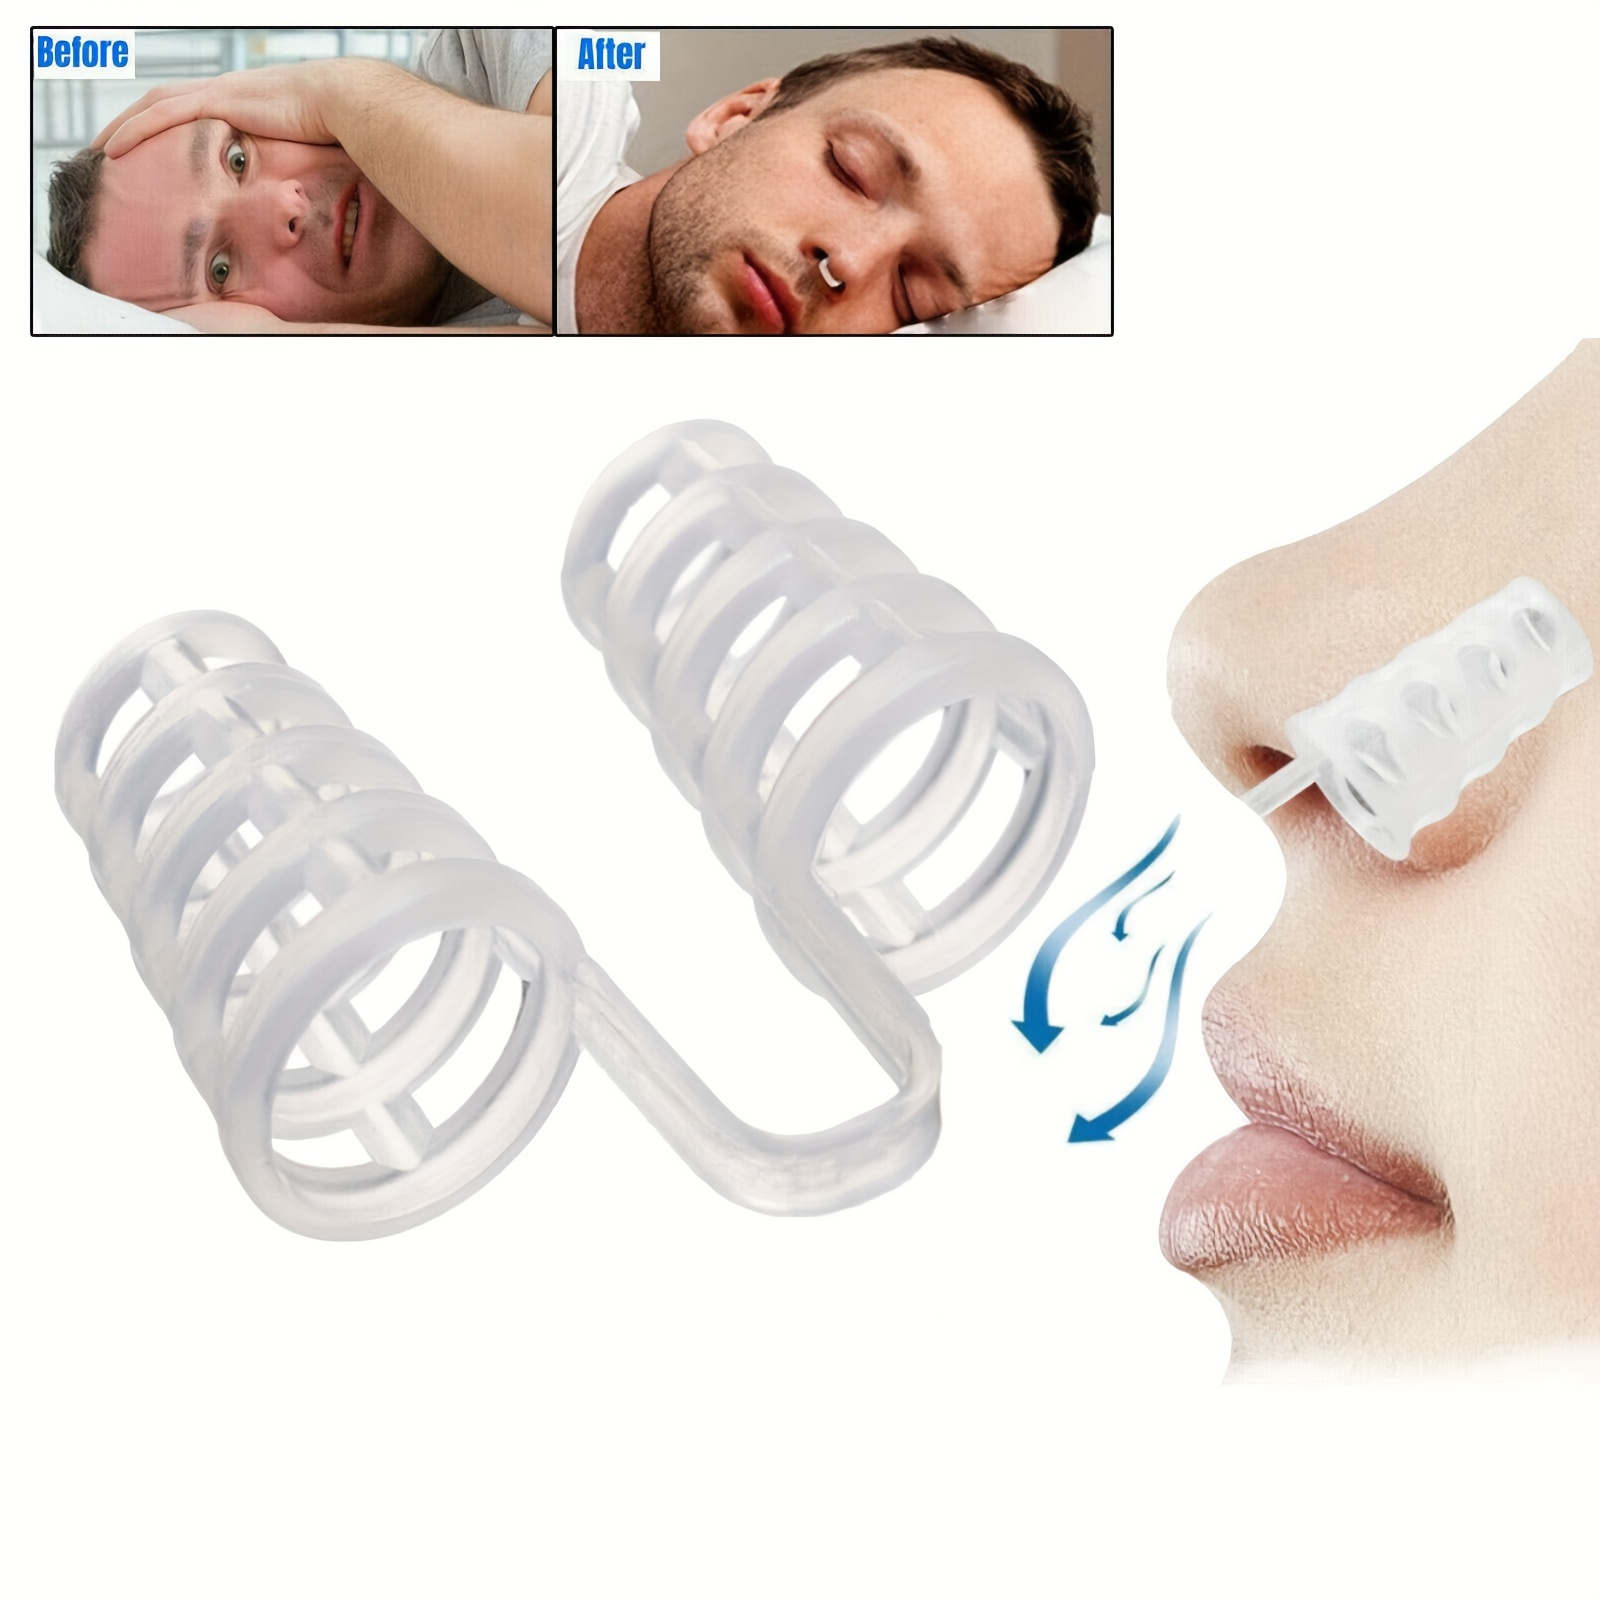  Dispositivos antironquidos, 4 clips magnéticos de silicona para  la nariz + 8 dilatadores nasales de silicona, solución para ronquidos,  cómoda nasal para aliviar los ronquidos, dejar de roncar, ayuda para dormir